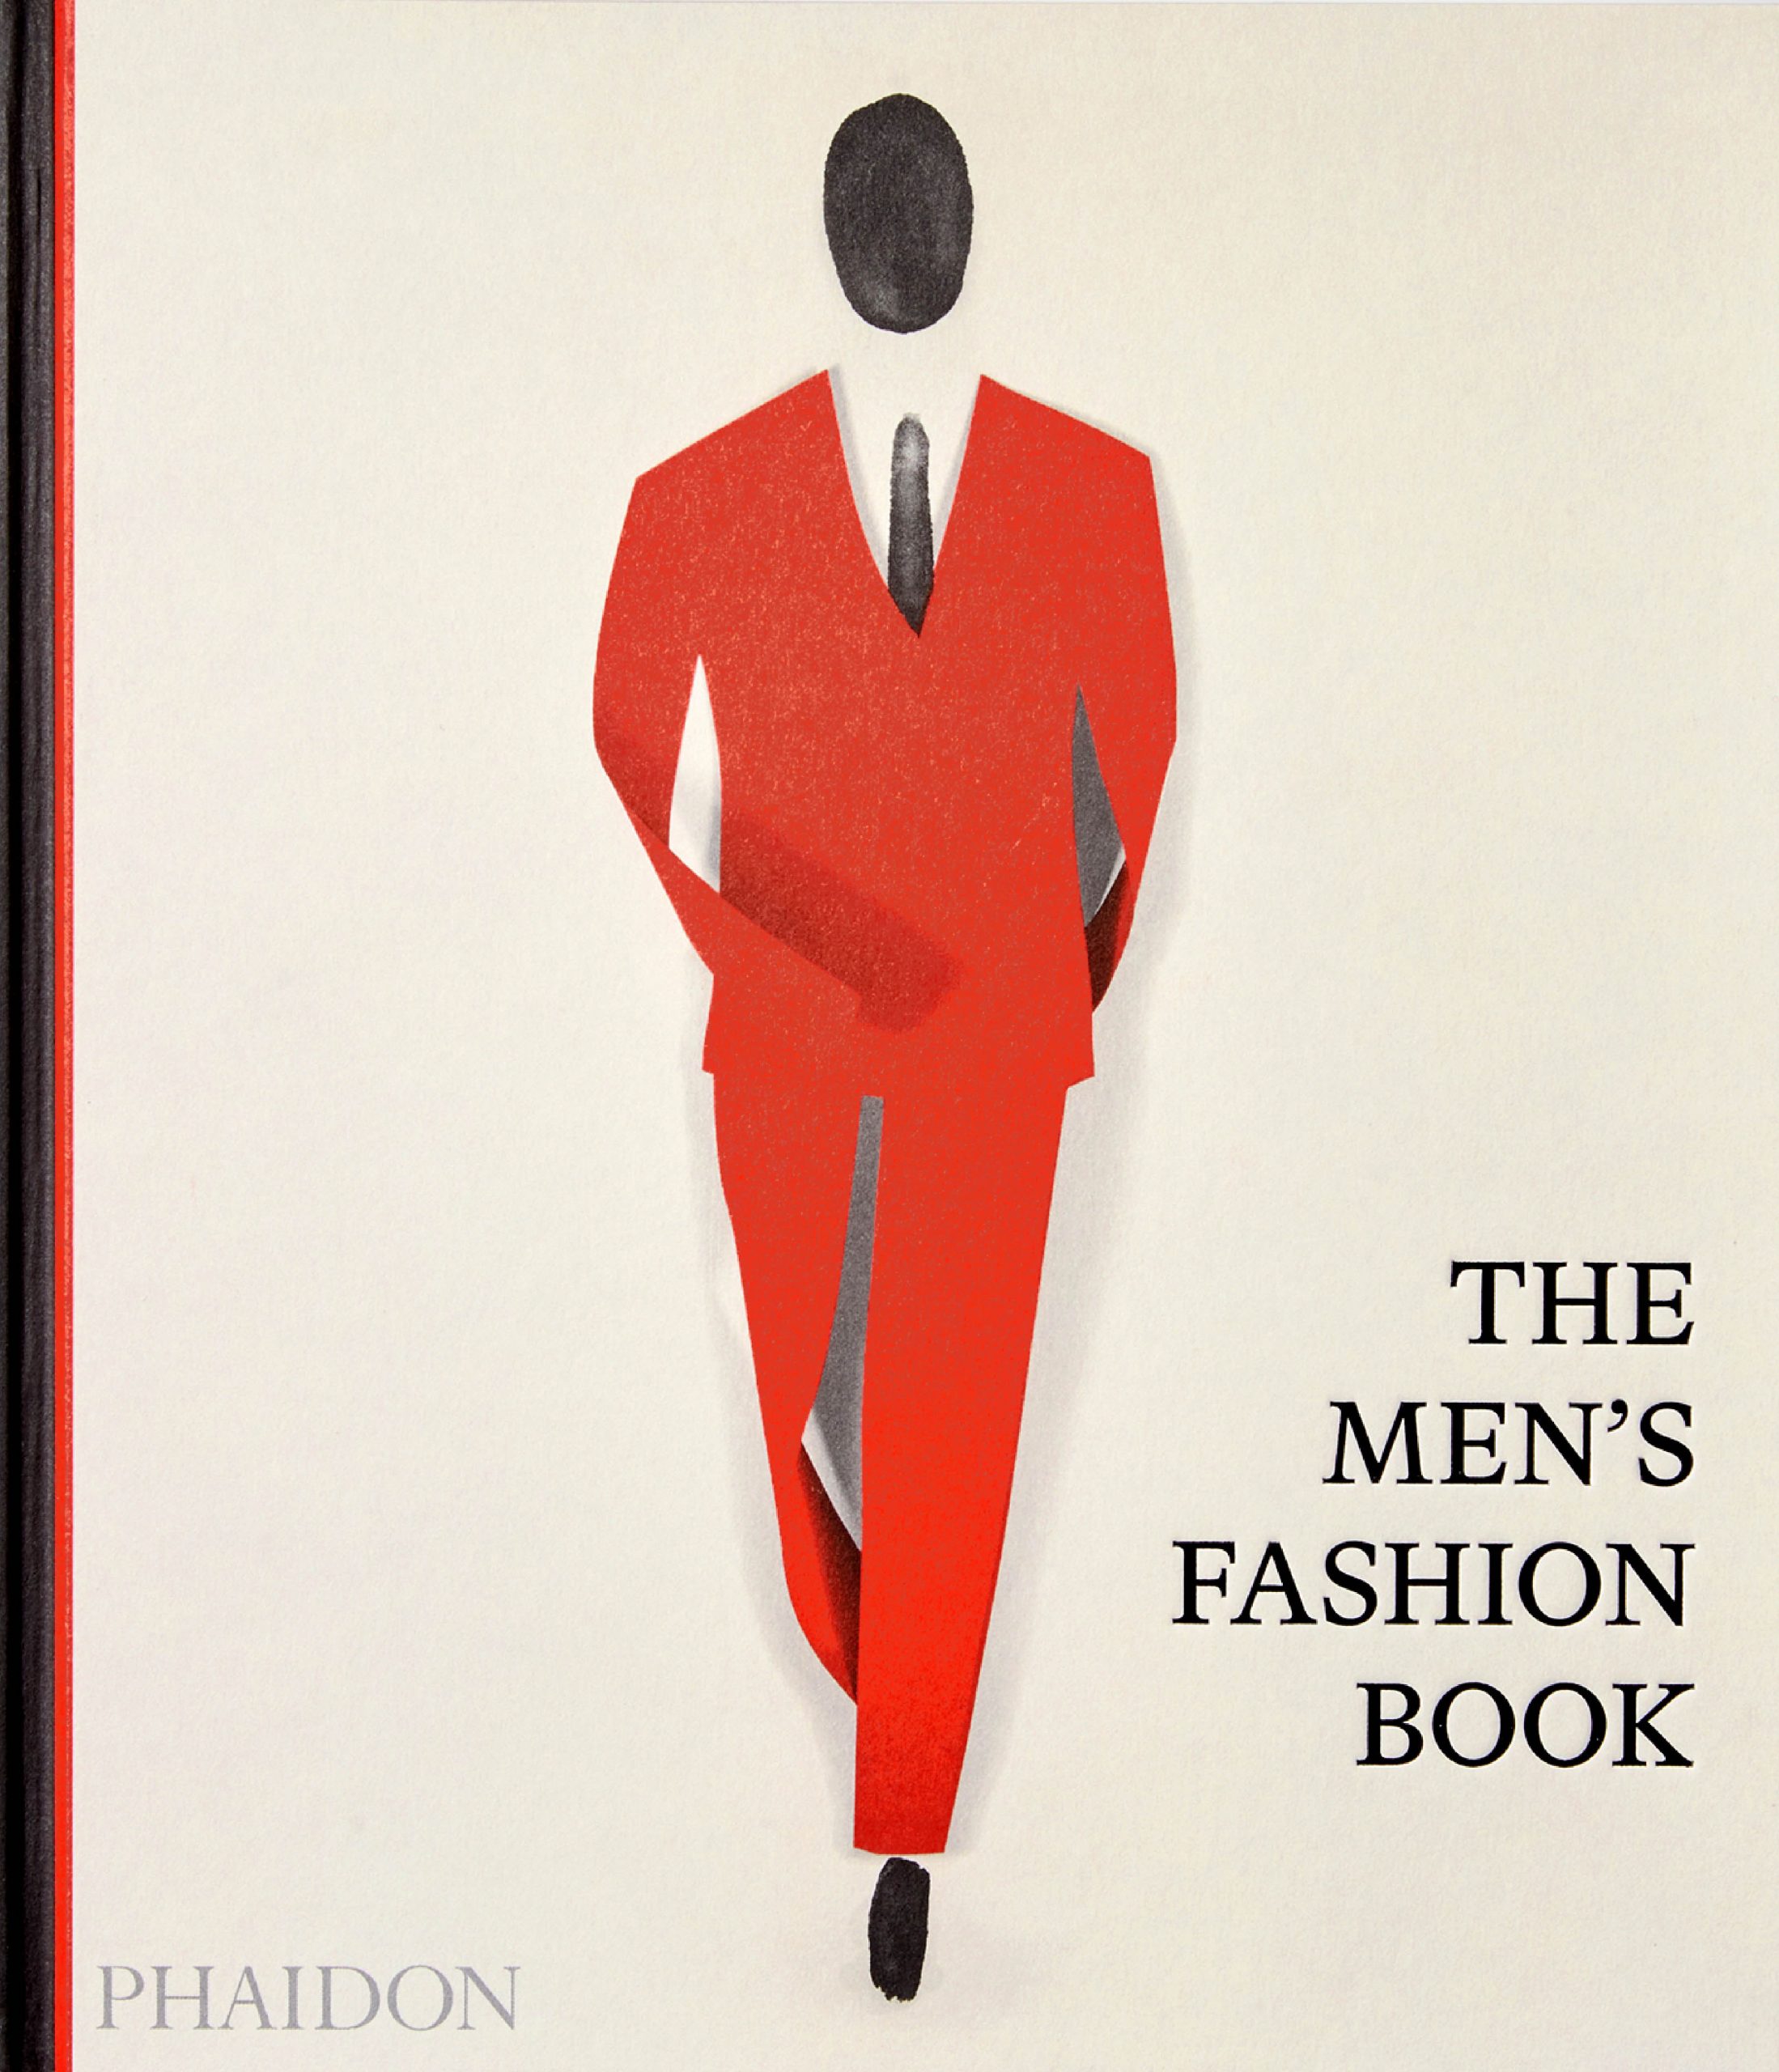 Libro moda masculina / Phaidon